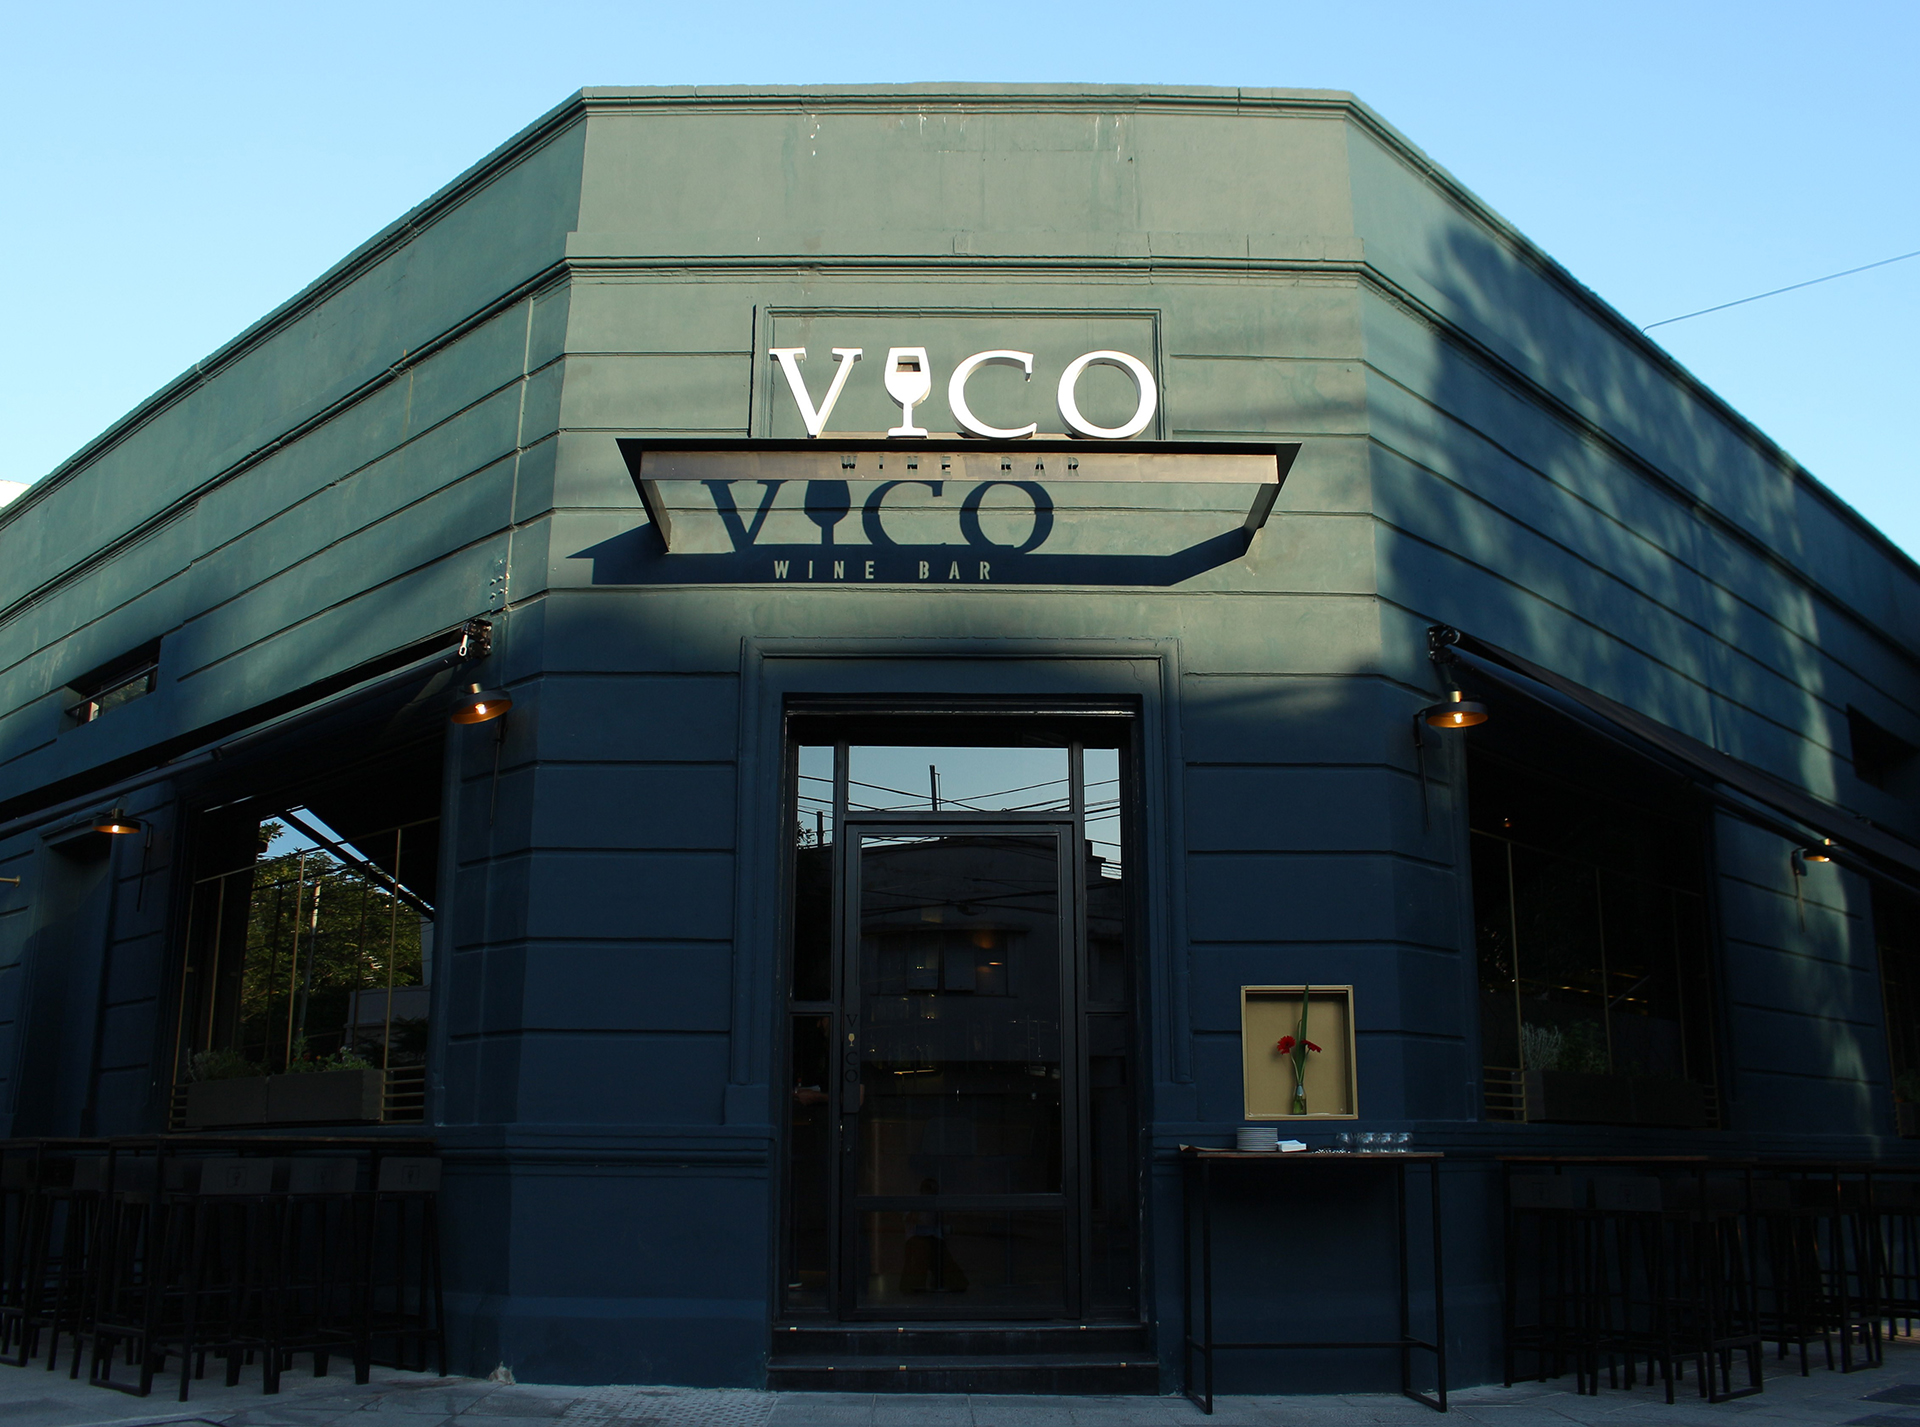 El wine bar VICO, apostando a la movida, abrió sus puertas en Villa Crespo y luego desembarcó, también, en Palermo